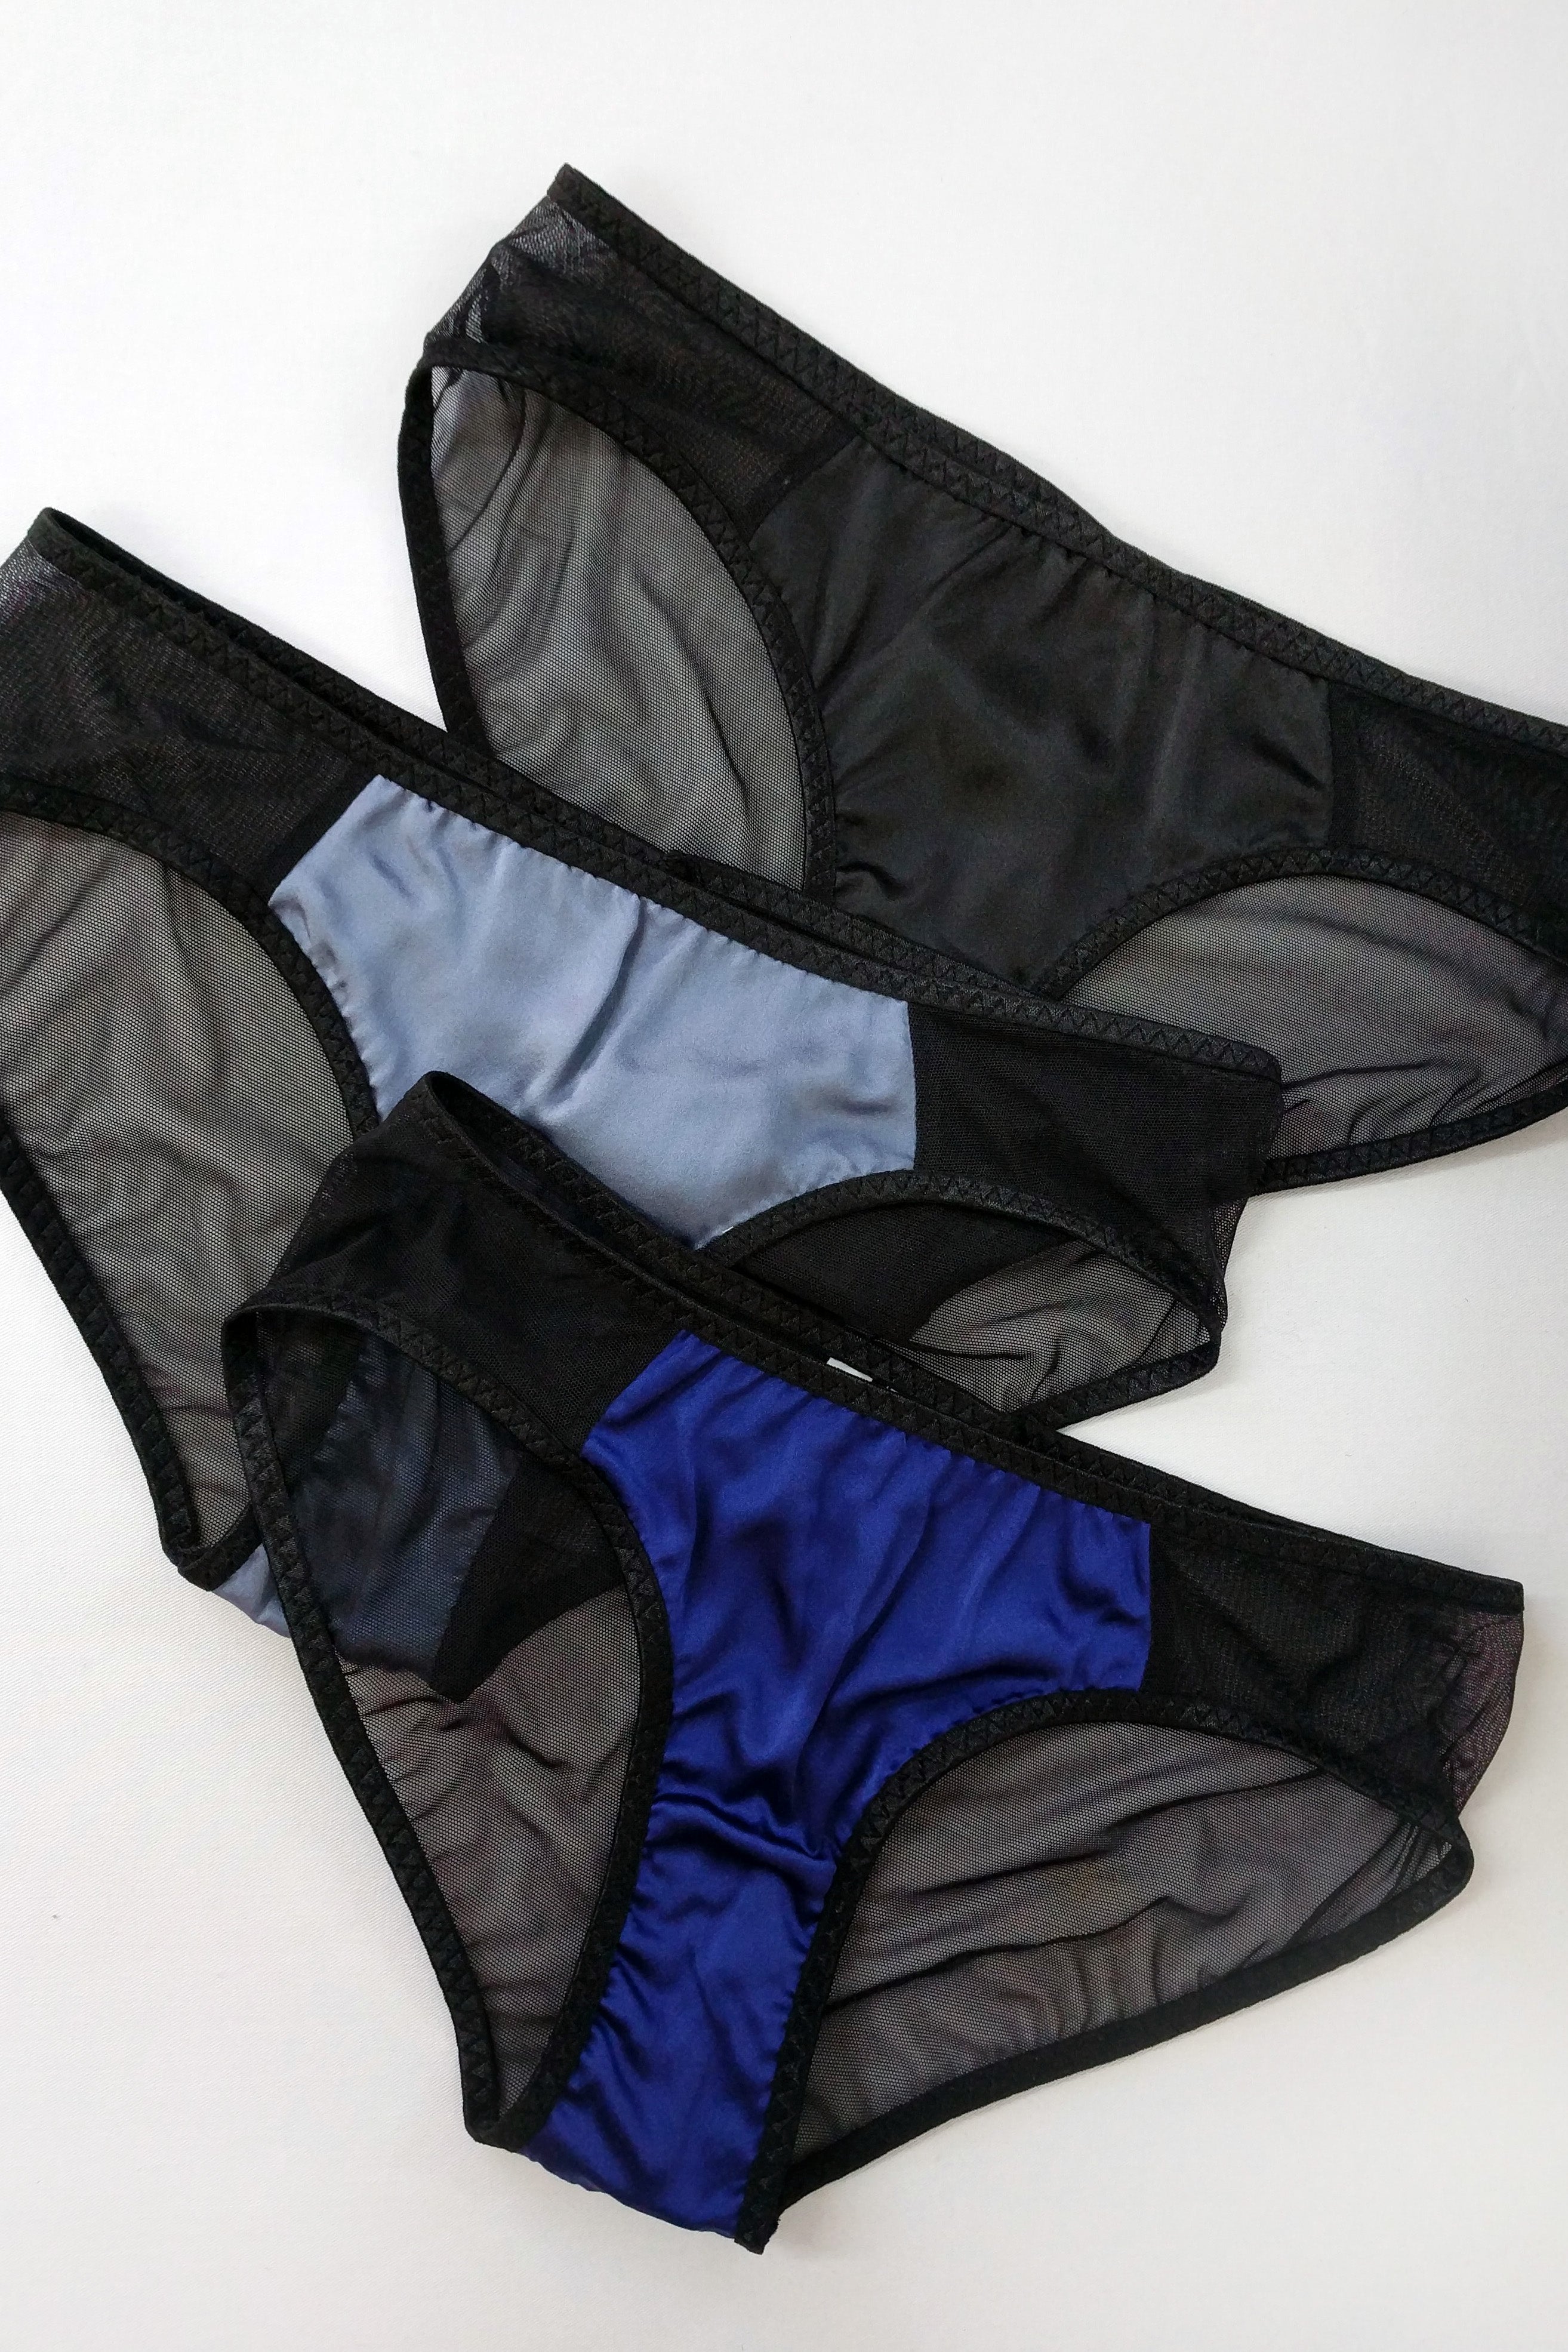 Louisa knickers  Designer silk underwear sets